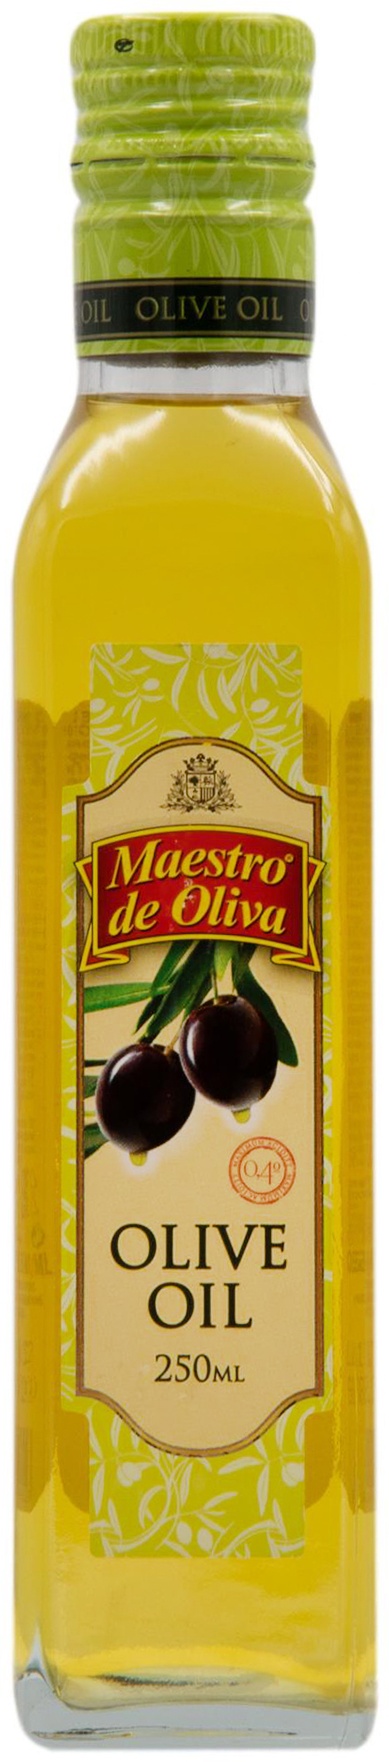 Масло оливковое рафинированное. Масло маэстро де олива железные банки. Маэстро де олива оливковое масло где указана кислотность.